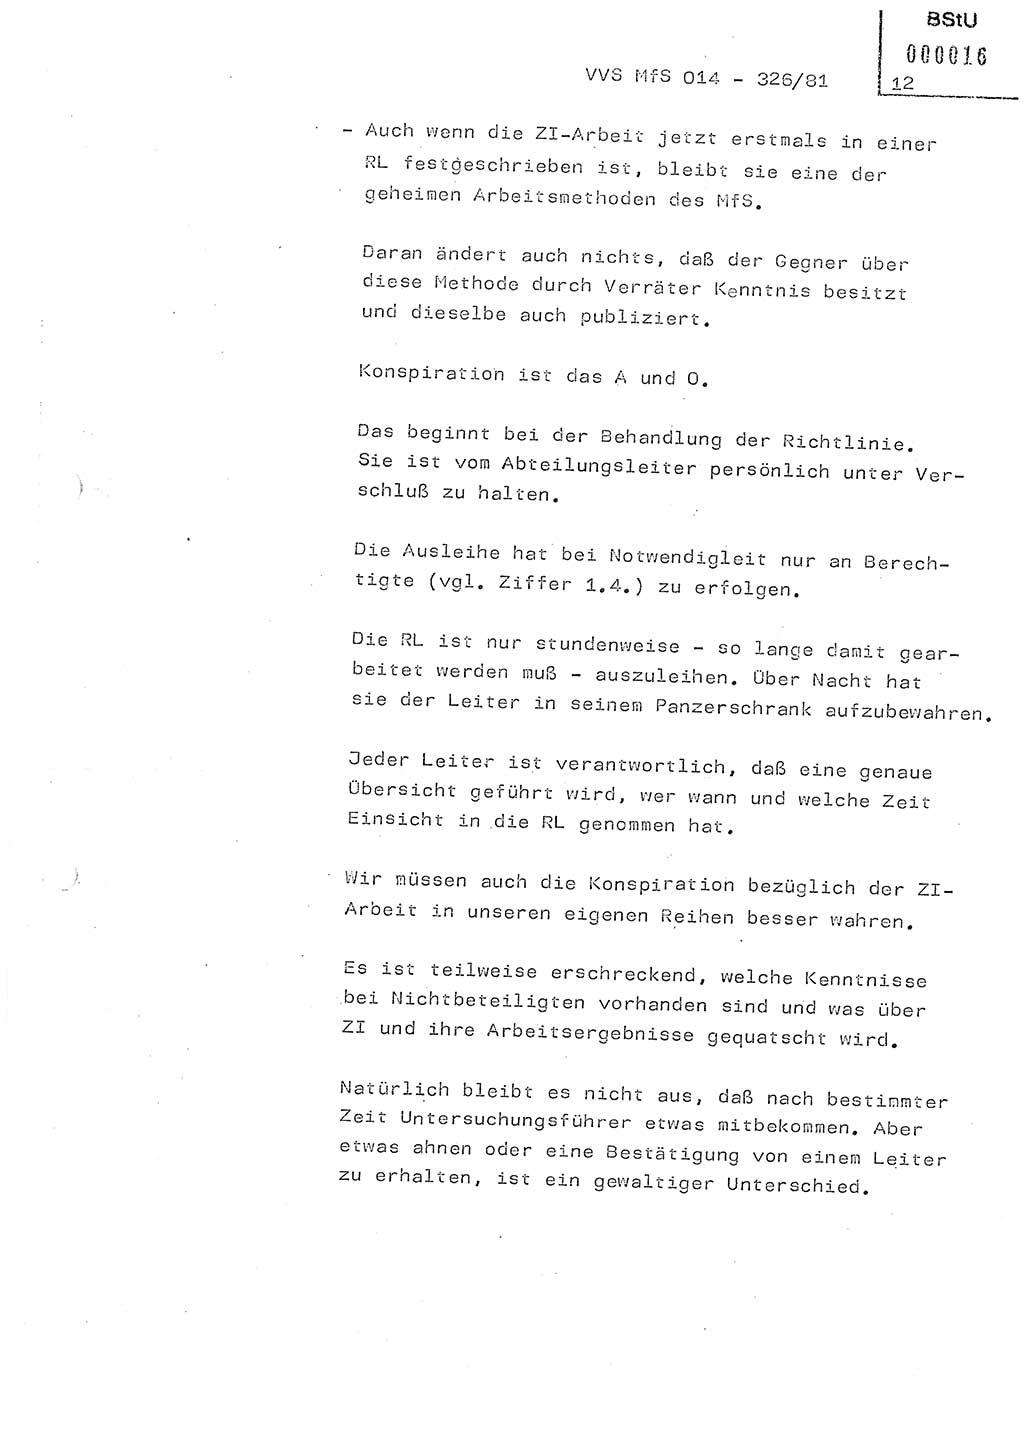 Thesen zum Einführungsvortrag für die Schulung zur Richtlinie Nr. 2/81 [zur Arbeit mit Zelleninformatoren (ZI)] des Genossen Minister (Generaloberst Erich Mielke), Ministerium für Staatssicherheit (MfS) [Deutsche Demokratische Republik (DDR)], Hauptabteilung (HA) Ⅸ, Vertrauliche Verschlußsache (VVS) 014-326/81, Berlin 1981, Seite 12 (Th. Sch. RL 2/81 MfS DDR HA Ⅸ VVS 014-326/81 1981, S. 12)